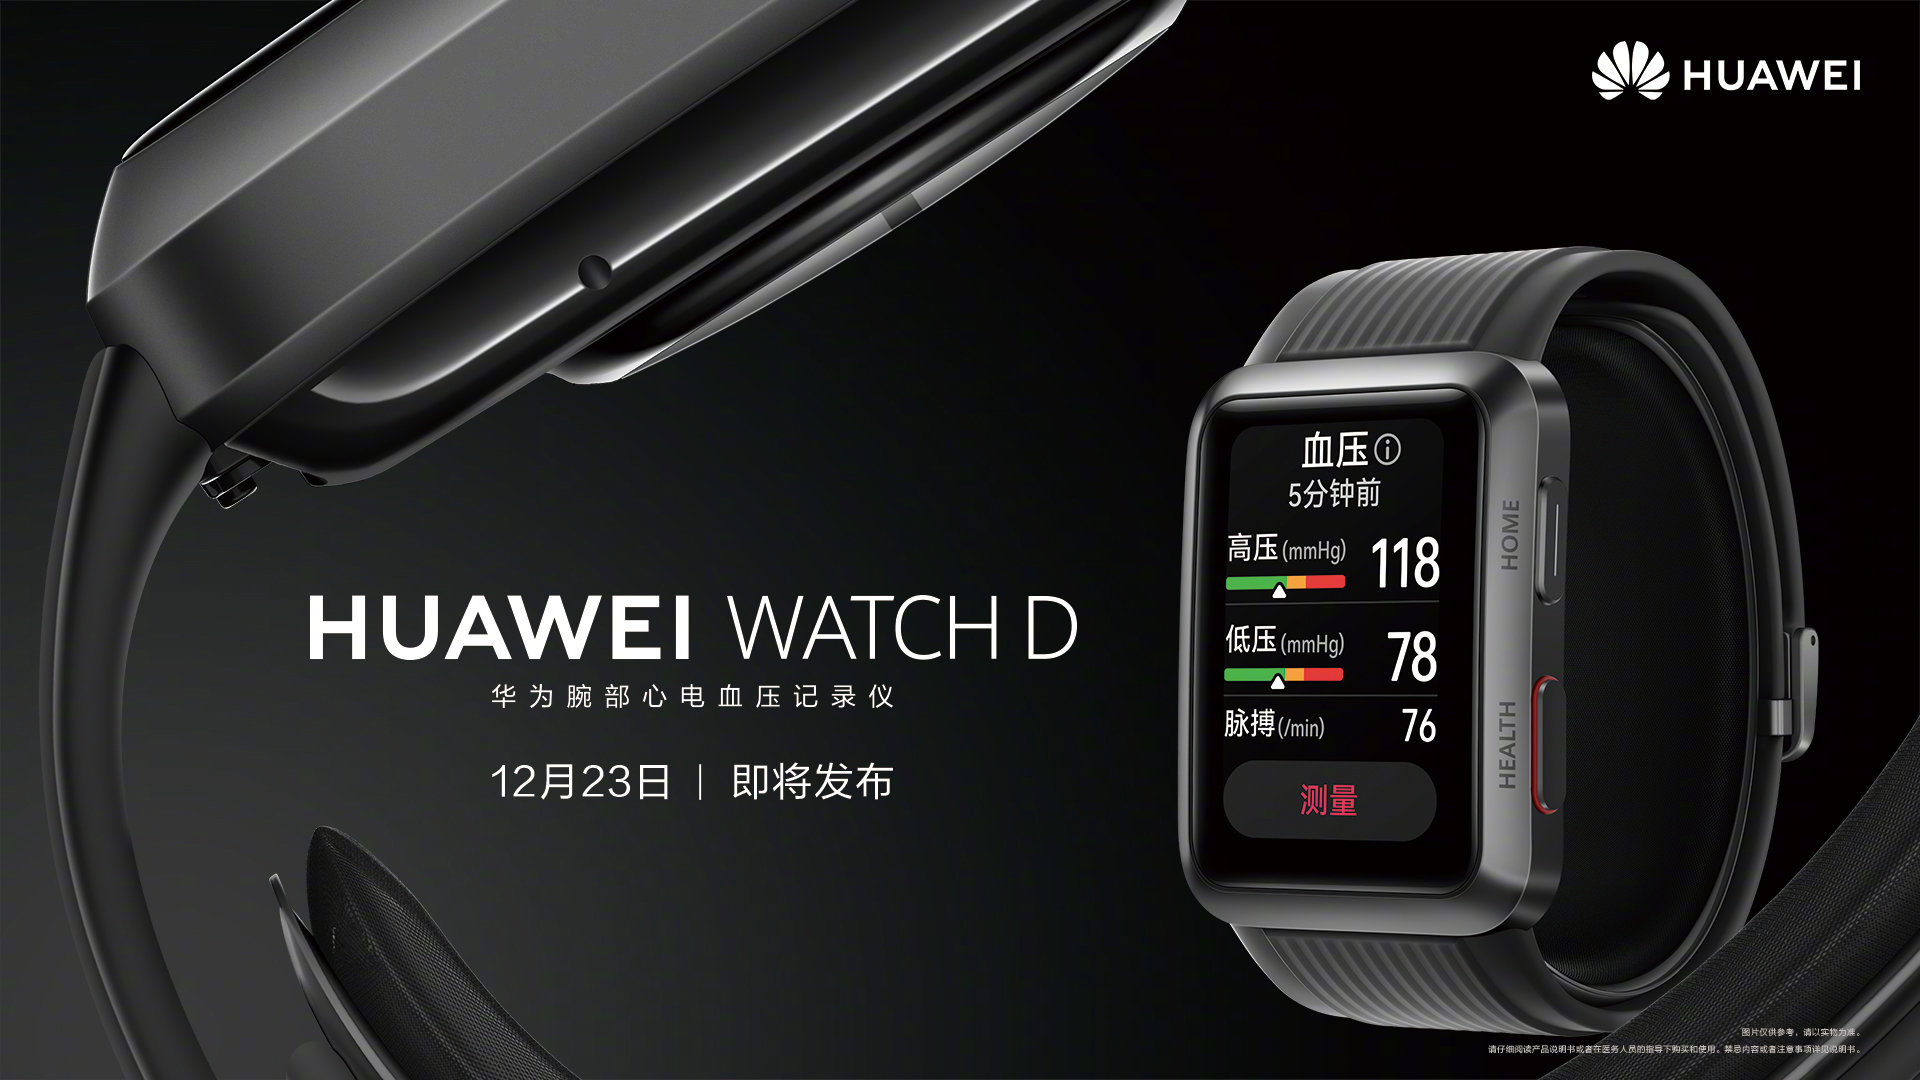 Ja, die Smartwatch Huawei Watch D wird zusammen mit der "Clamshell" Huawei P50 Pocket vorgestellt